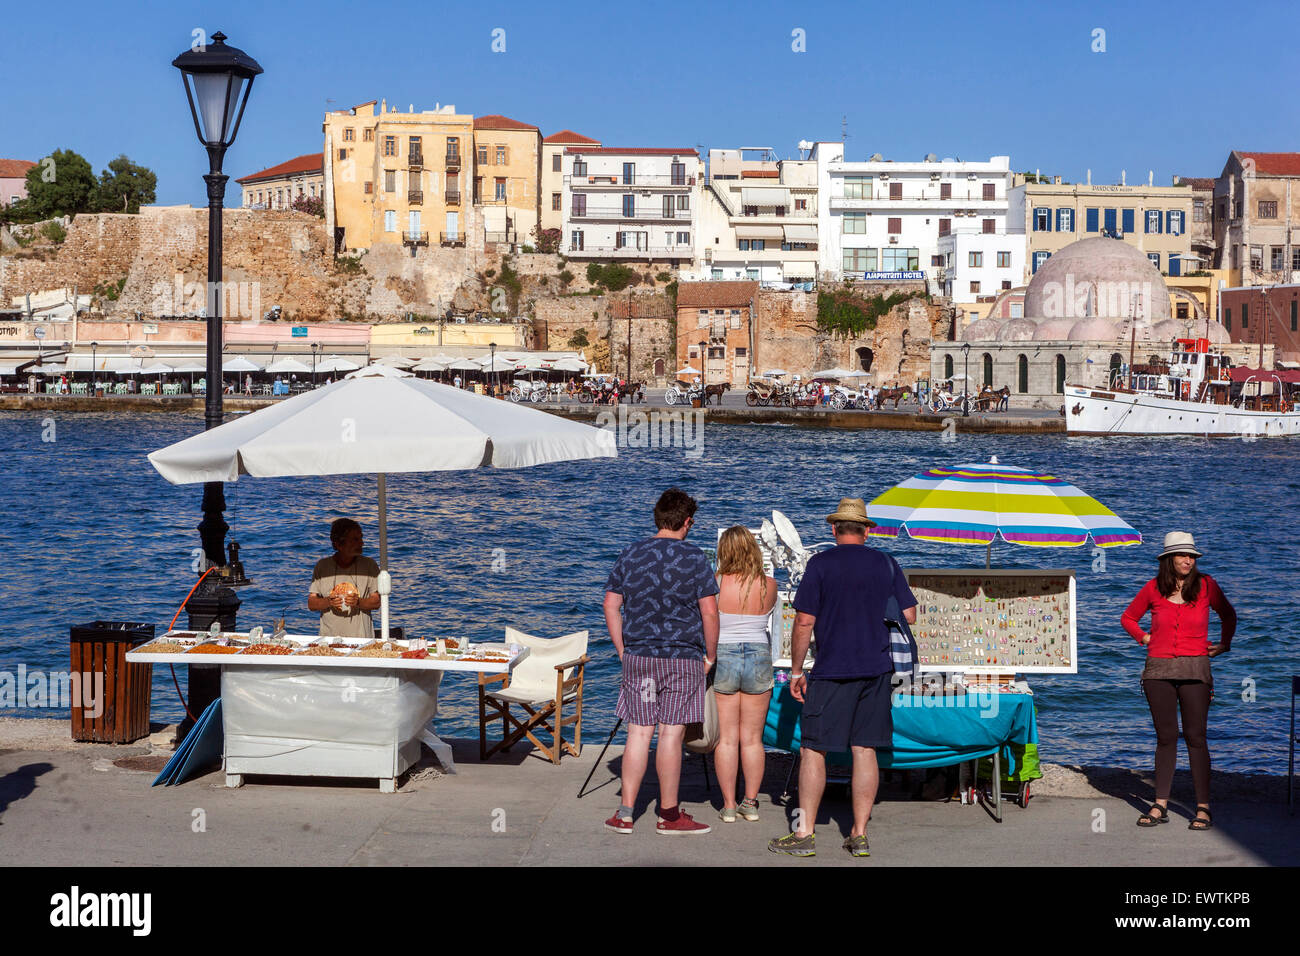 Menschen am Wasser im alten venezianischen Hafen Chania Kreta Griechenland Stockfoto